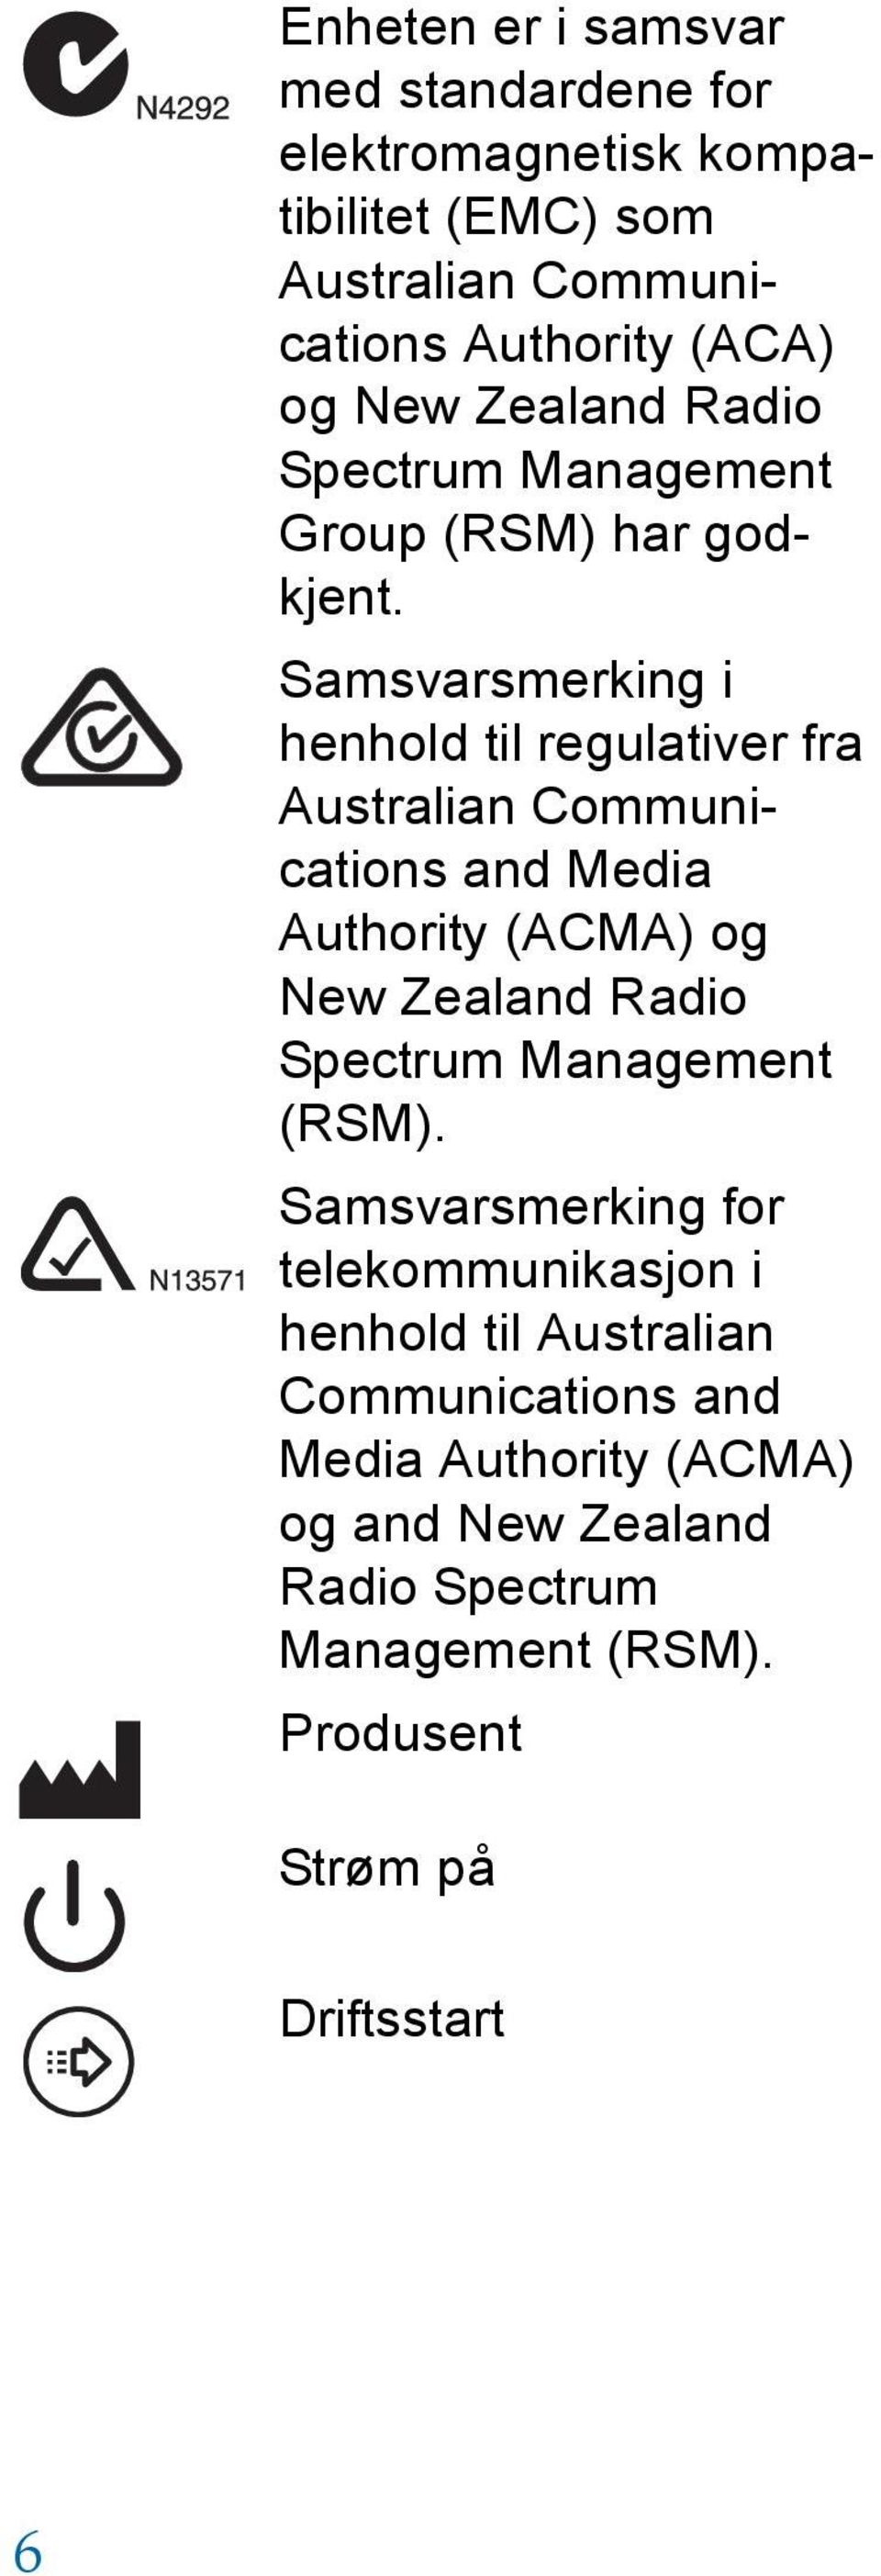 Samsvarsmerking i henhold til regulativer fra Australian Communications and Media Authority (ACMA) og New Zealand Radio Spectrum